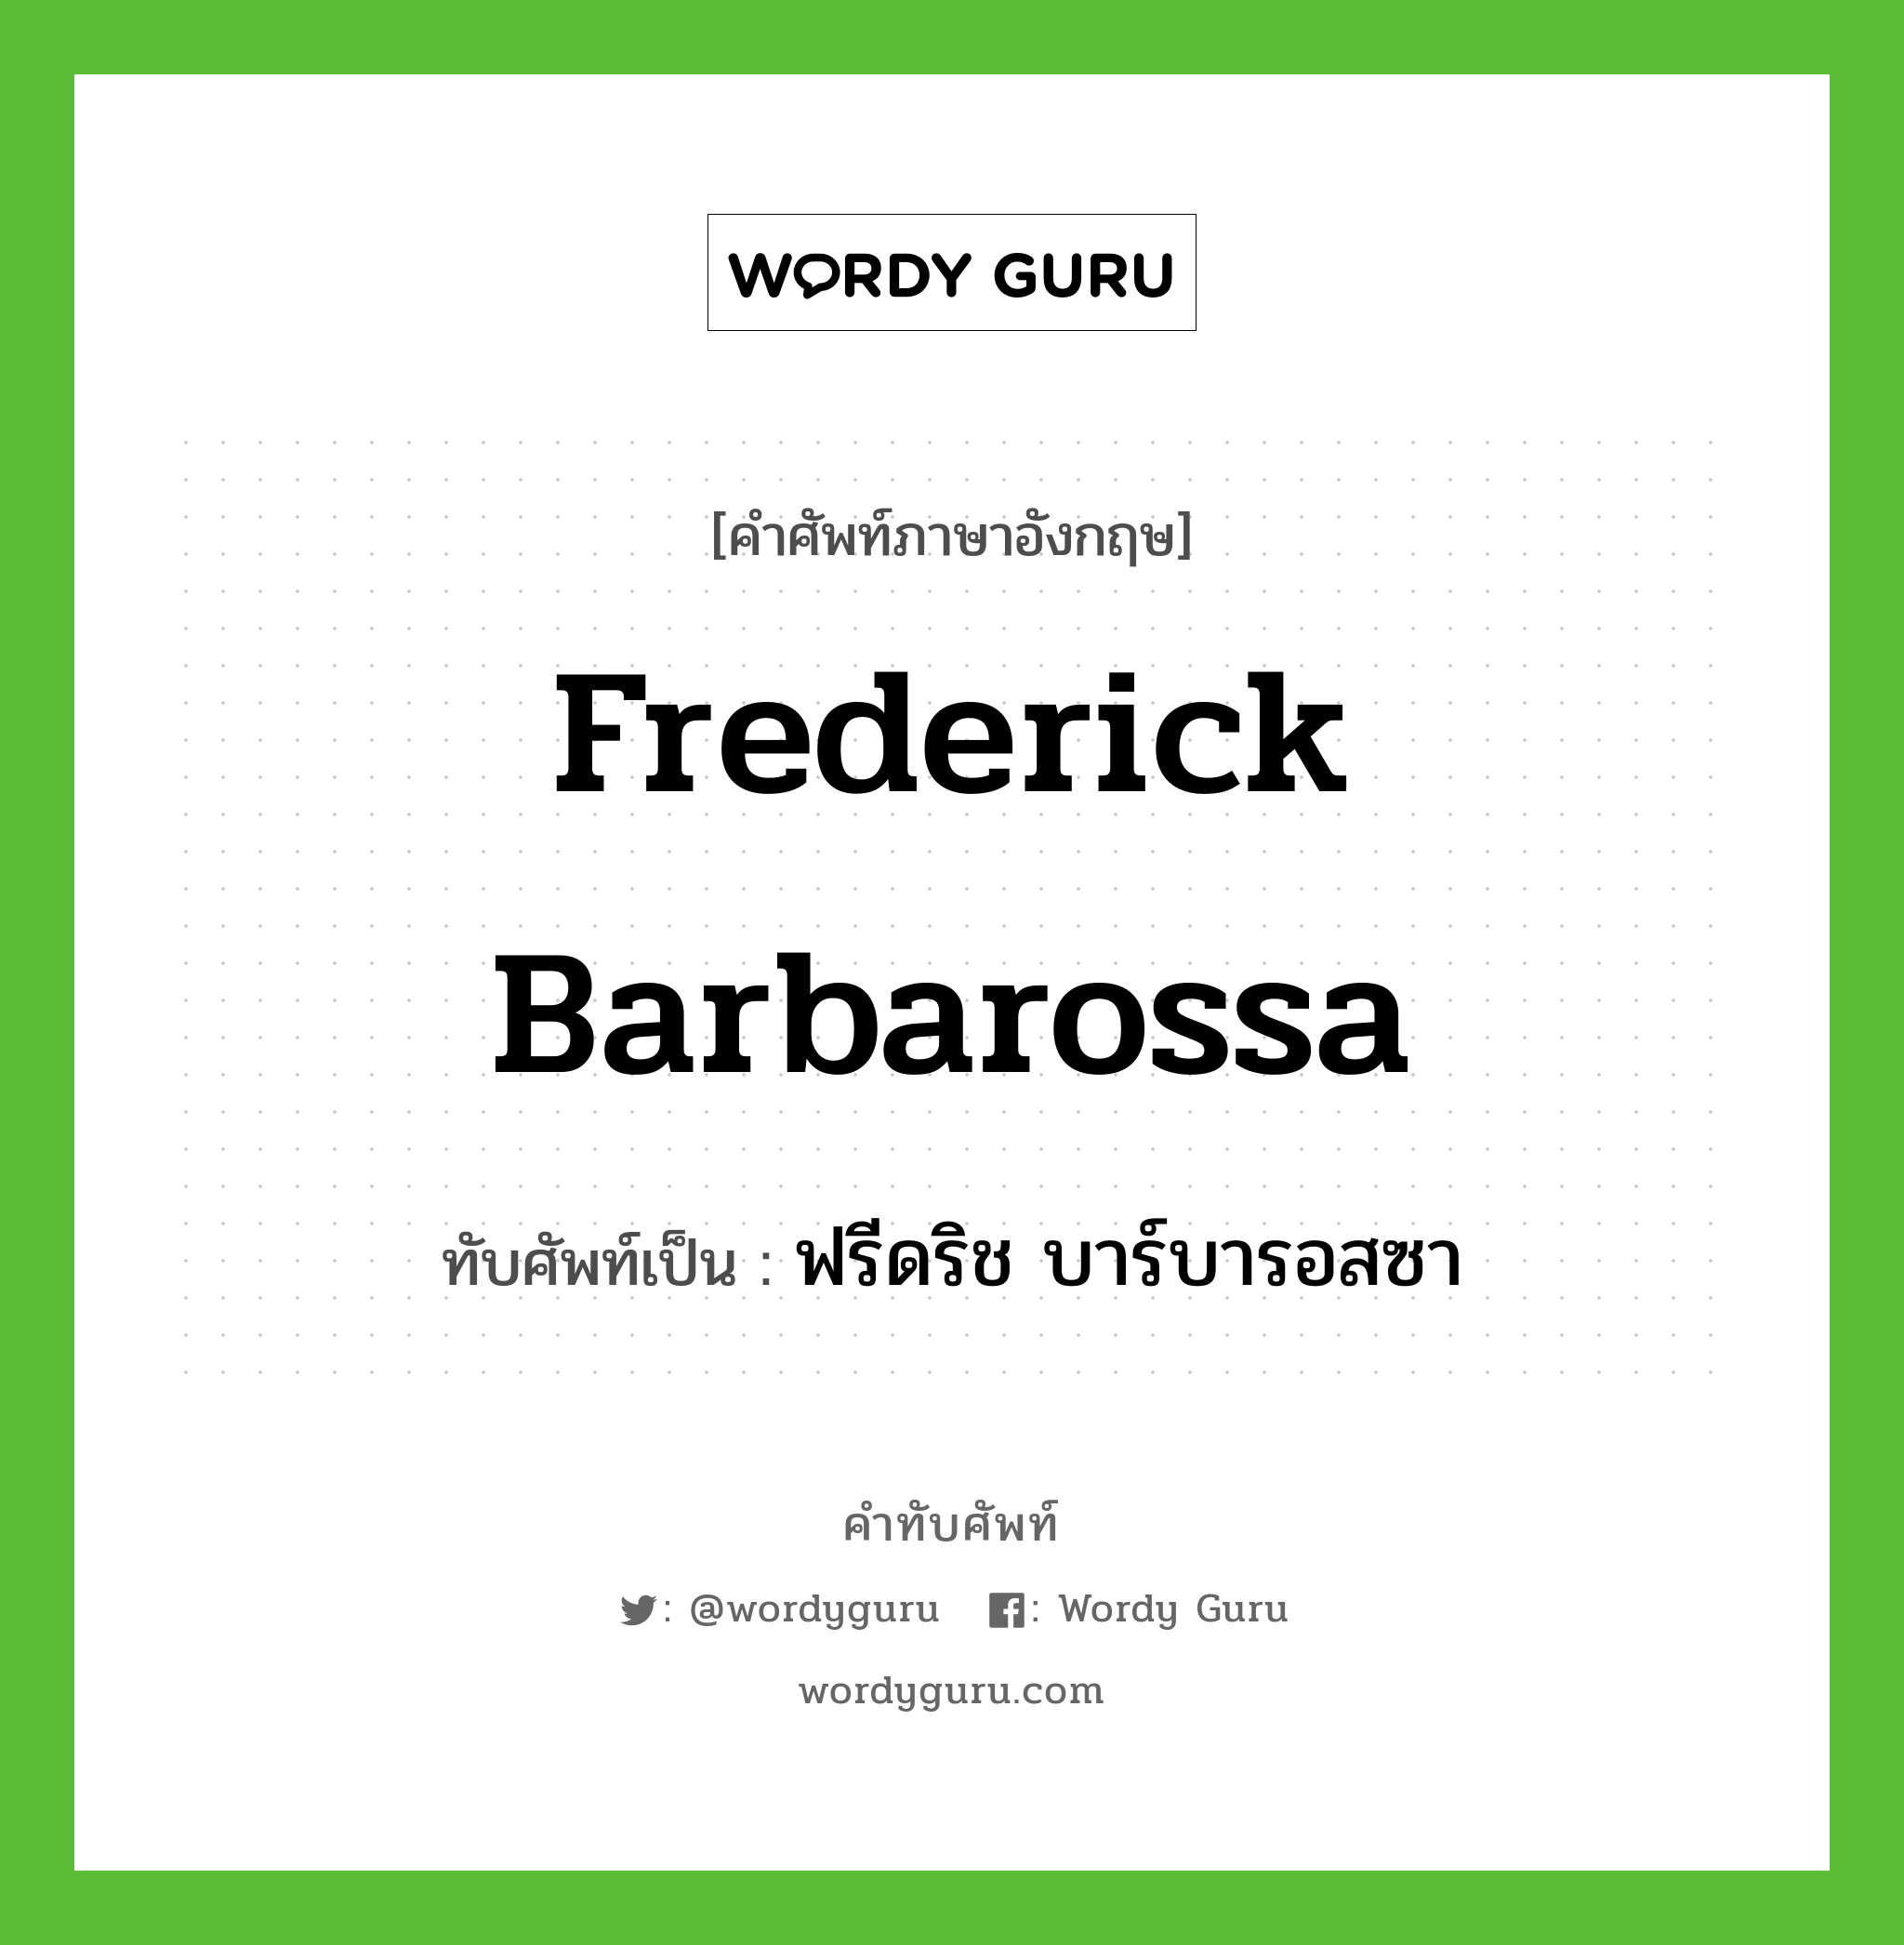 ฟรีดริช บาร์บารอสซา เขียนอย่างไร?, คำศัพท์ภาษาอังกฤษ ฟรีดริช บาร์บารอสซา ทับศัพท์เป็น Frederick Barbarossa